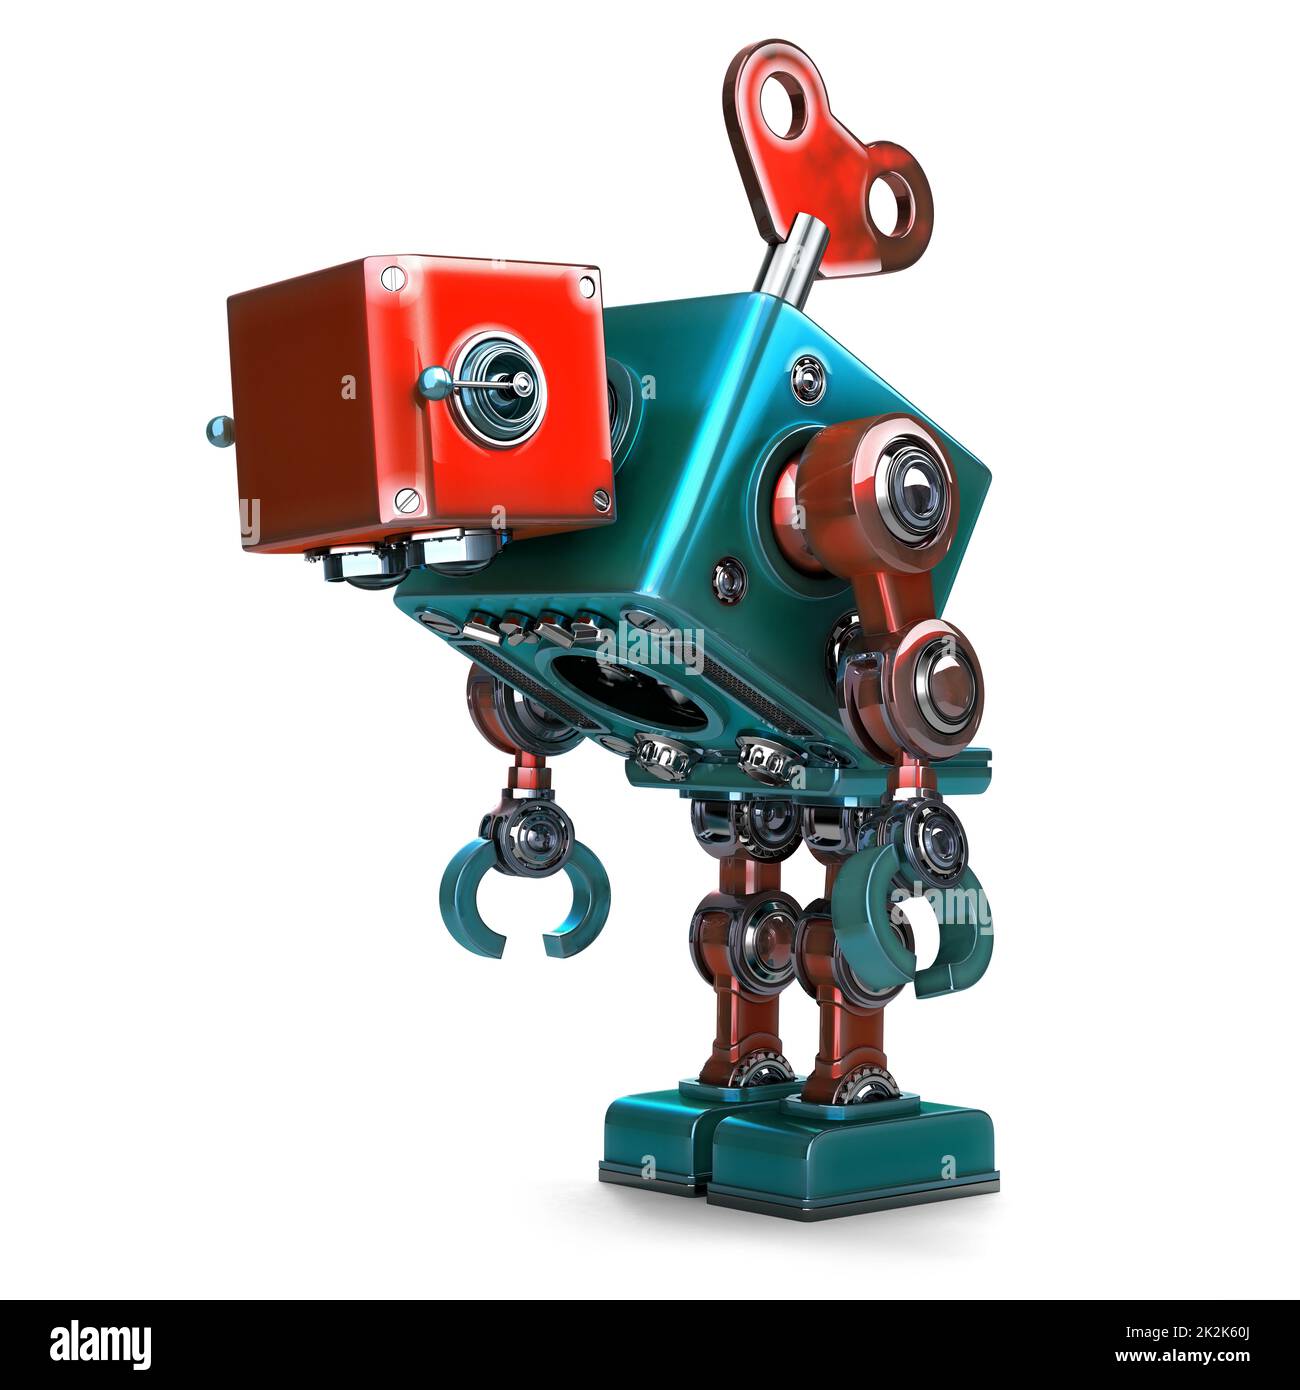 Ein überarbeiteter Roboter mit Schlüssel, der in seinem Rücken steckt. Isoliert. Enthält Beschneidungspfad Stockfoto